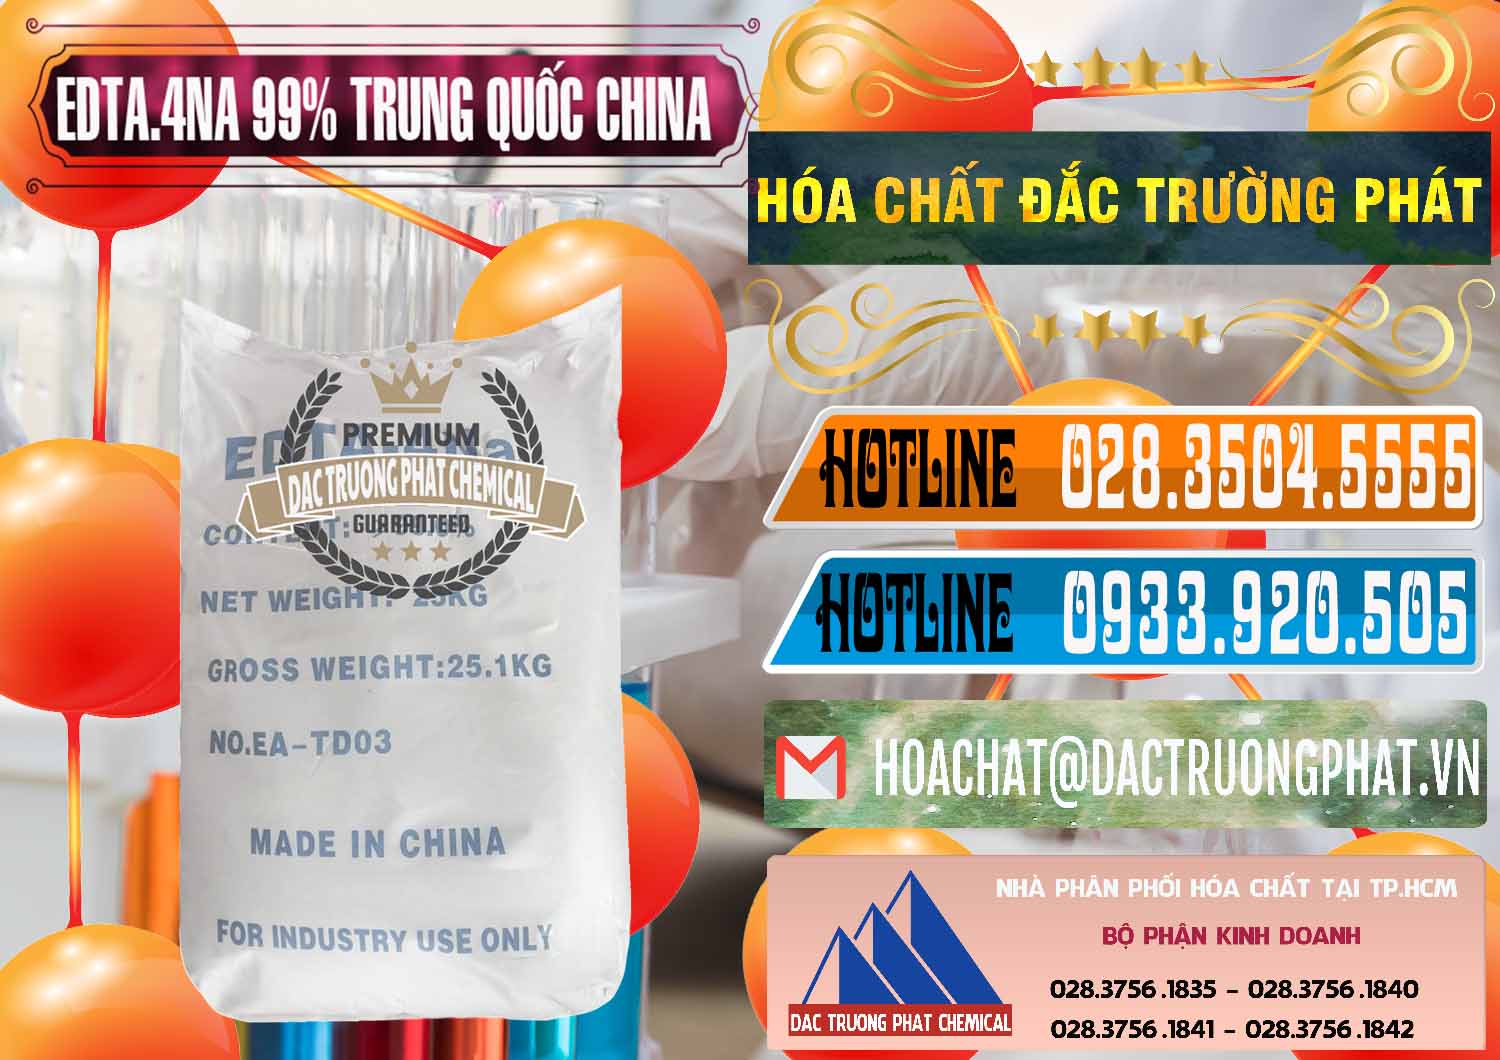 Nơi chuyên kinh doanh và bán EDTA.4NA - EDTA Muối 99% Trung Quốc China - 0292 - Cty chuyên bán _ cung cấp hóa chất tại TP.HCM - stmp.net